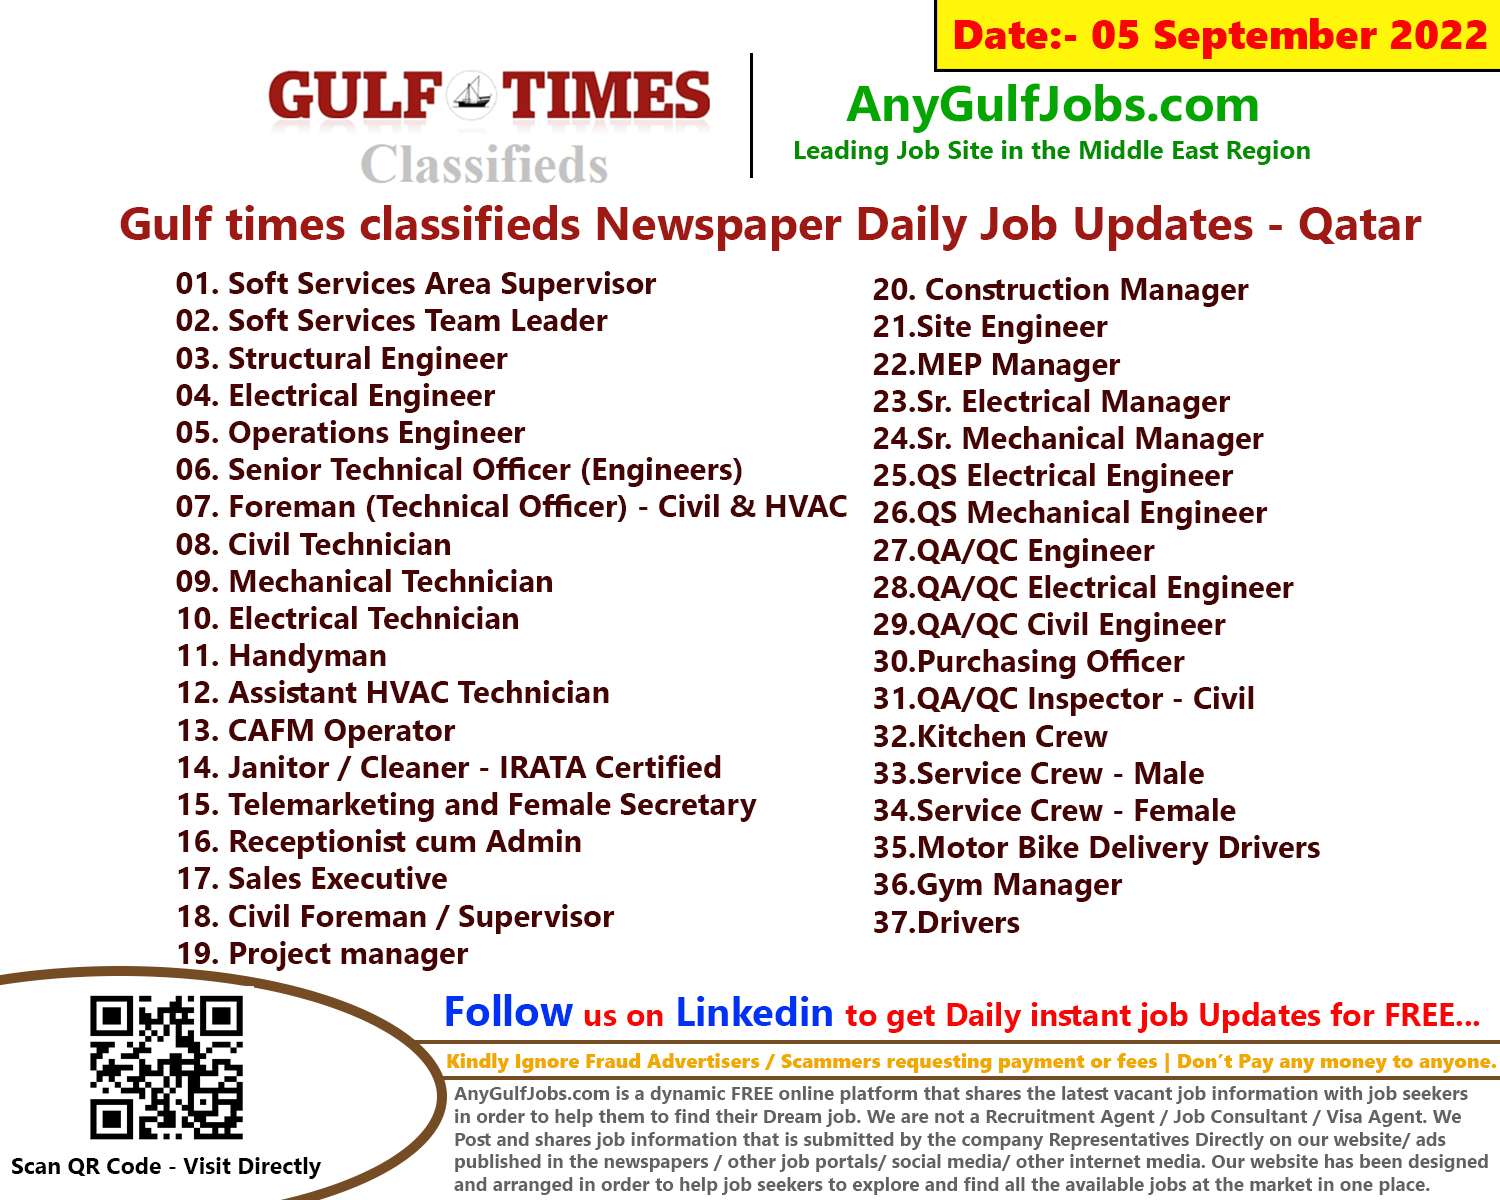 Gulf times classifieds Job Vacancies Qatar - 05 September 2022 List of Gulf times classifieds Job Vacancies Qatar - 05 September 2022